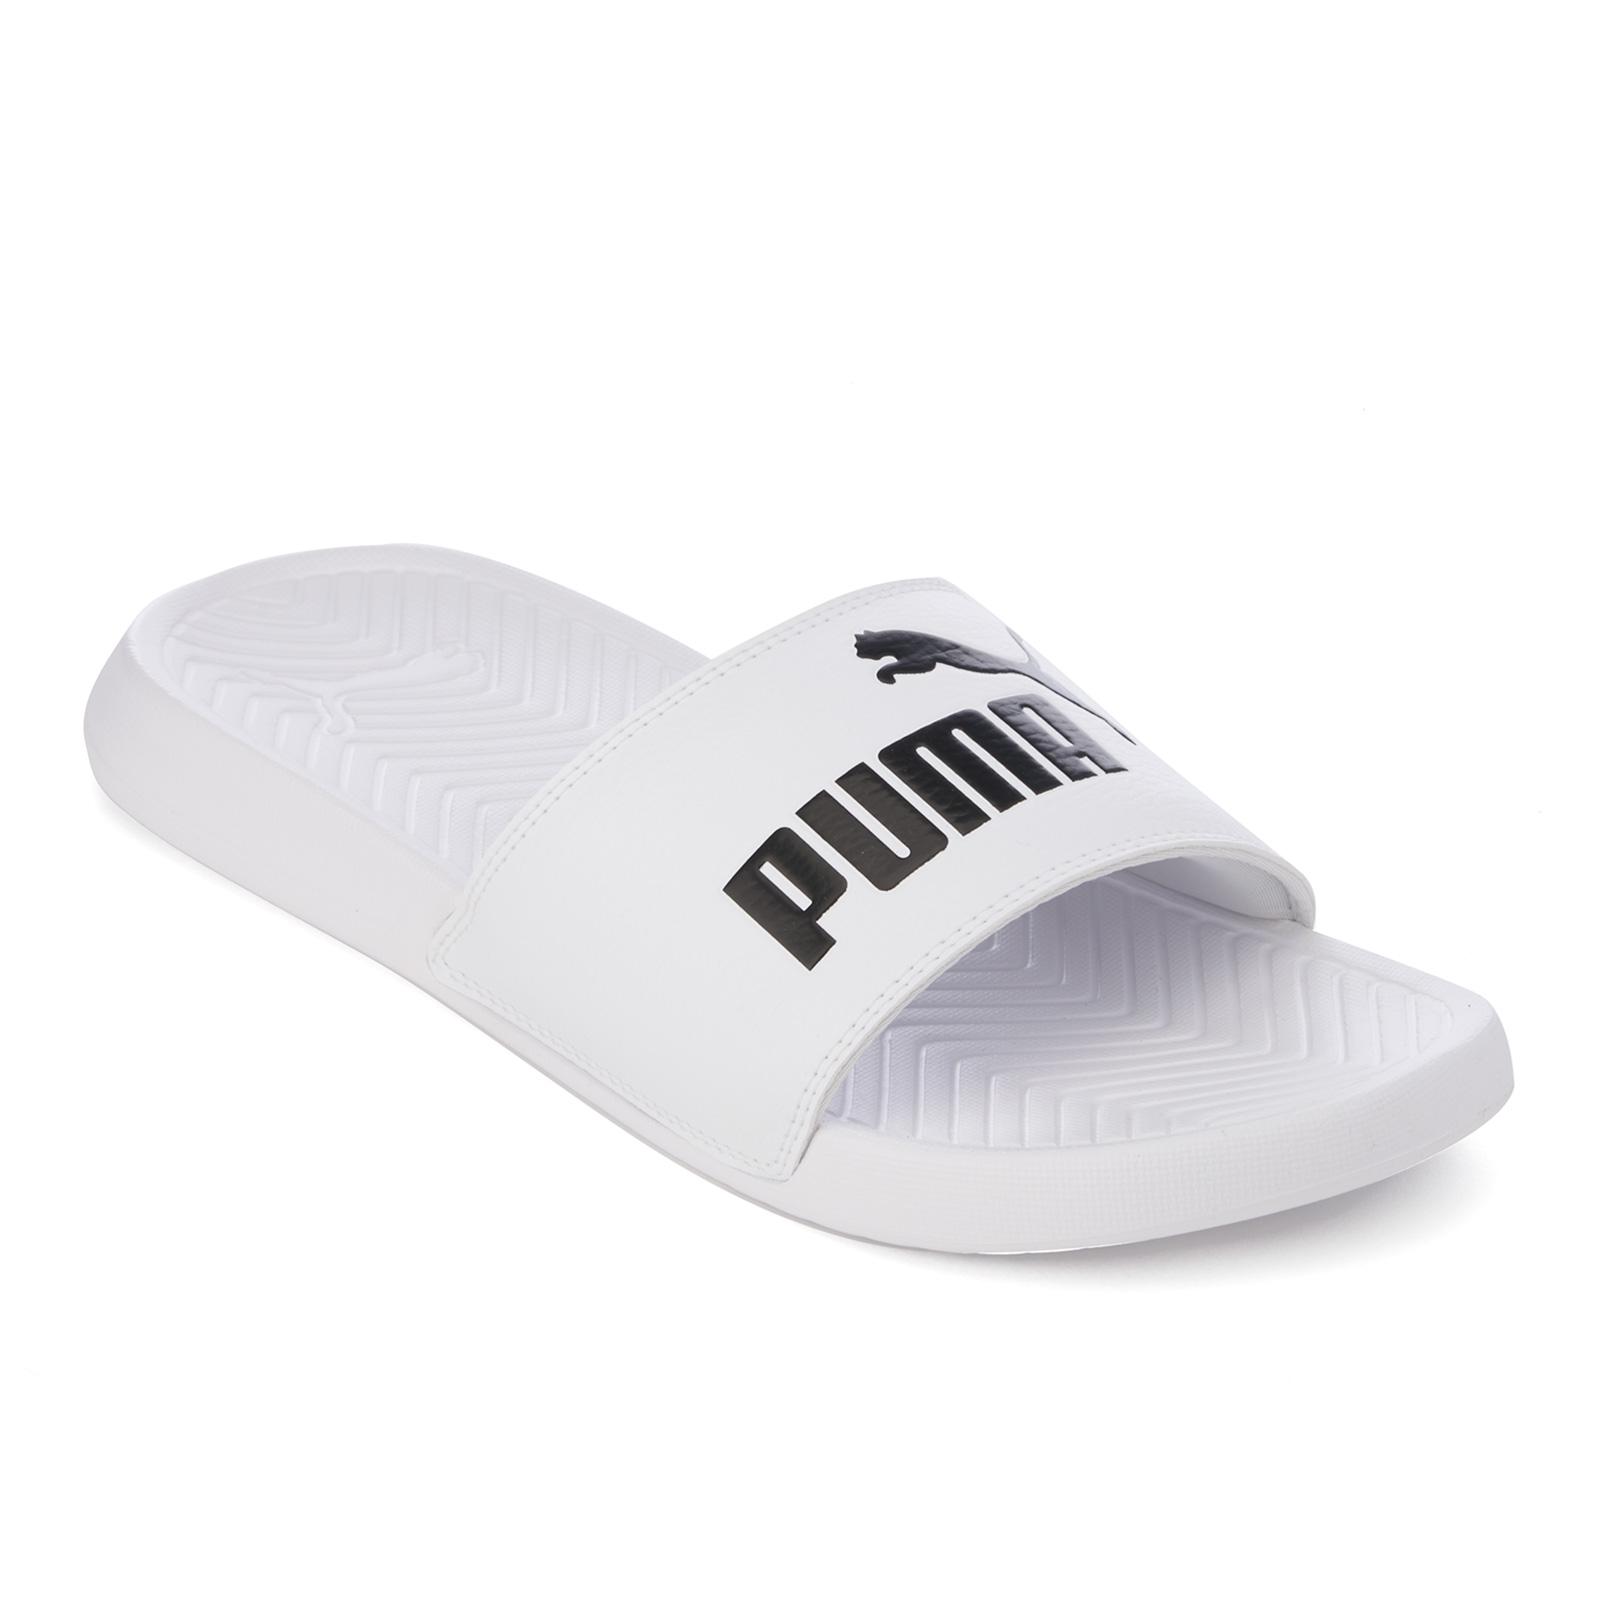 PUMA Men's Popcat Slide Sandals in White for Men - Lyst